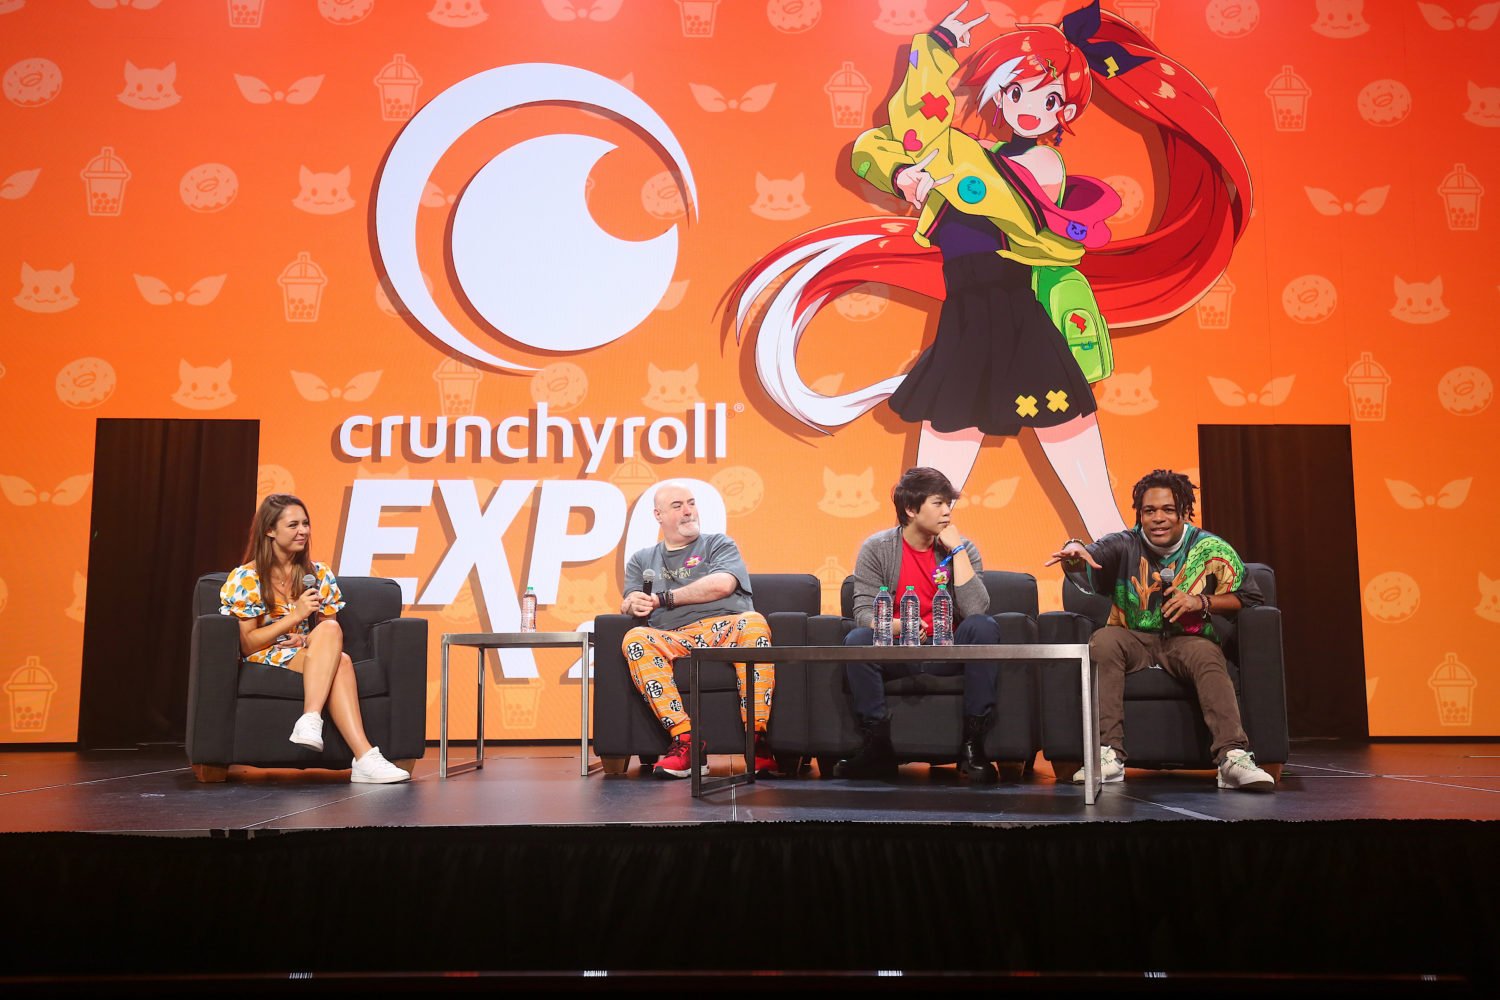 why can't I watch aot on crunchyroll? : r/Crunchyroll